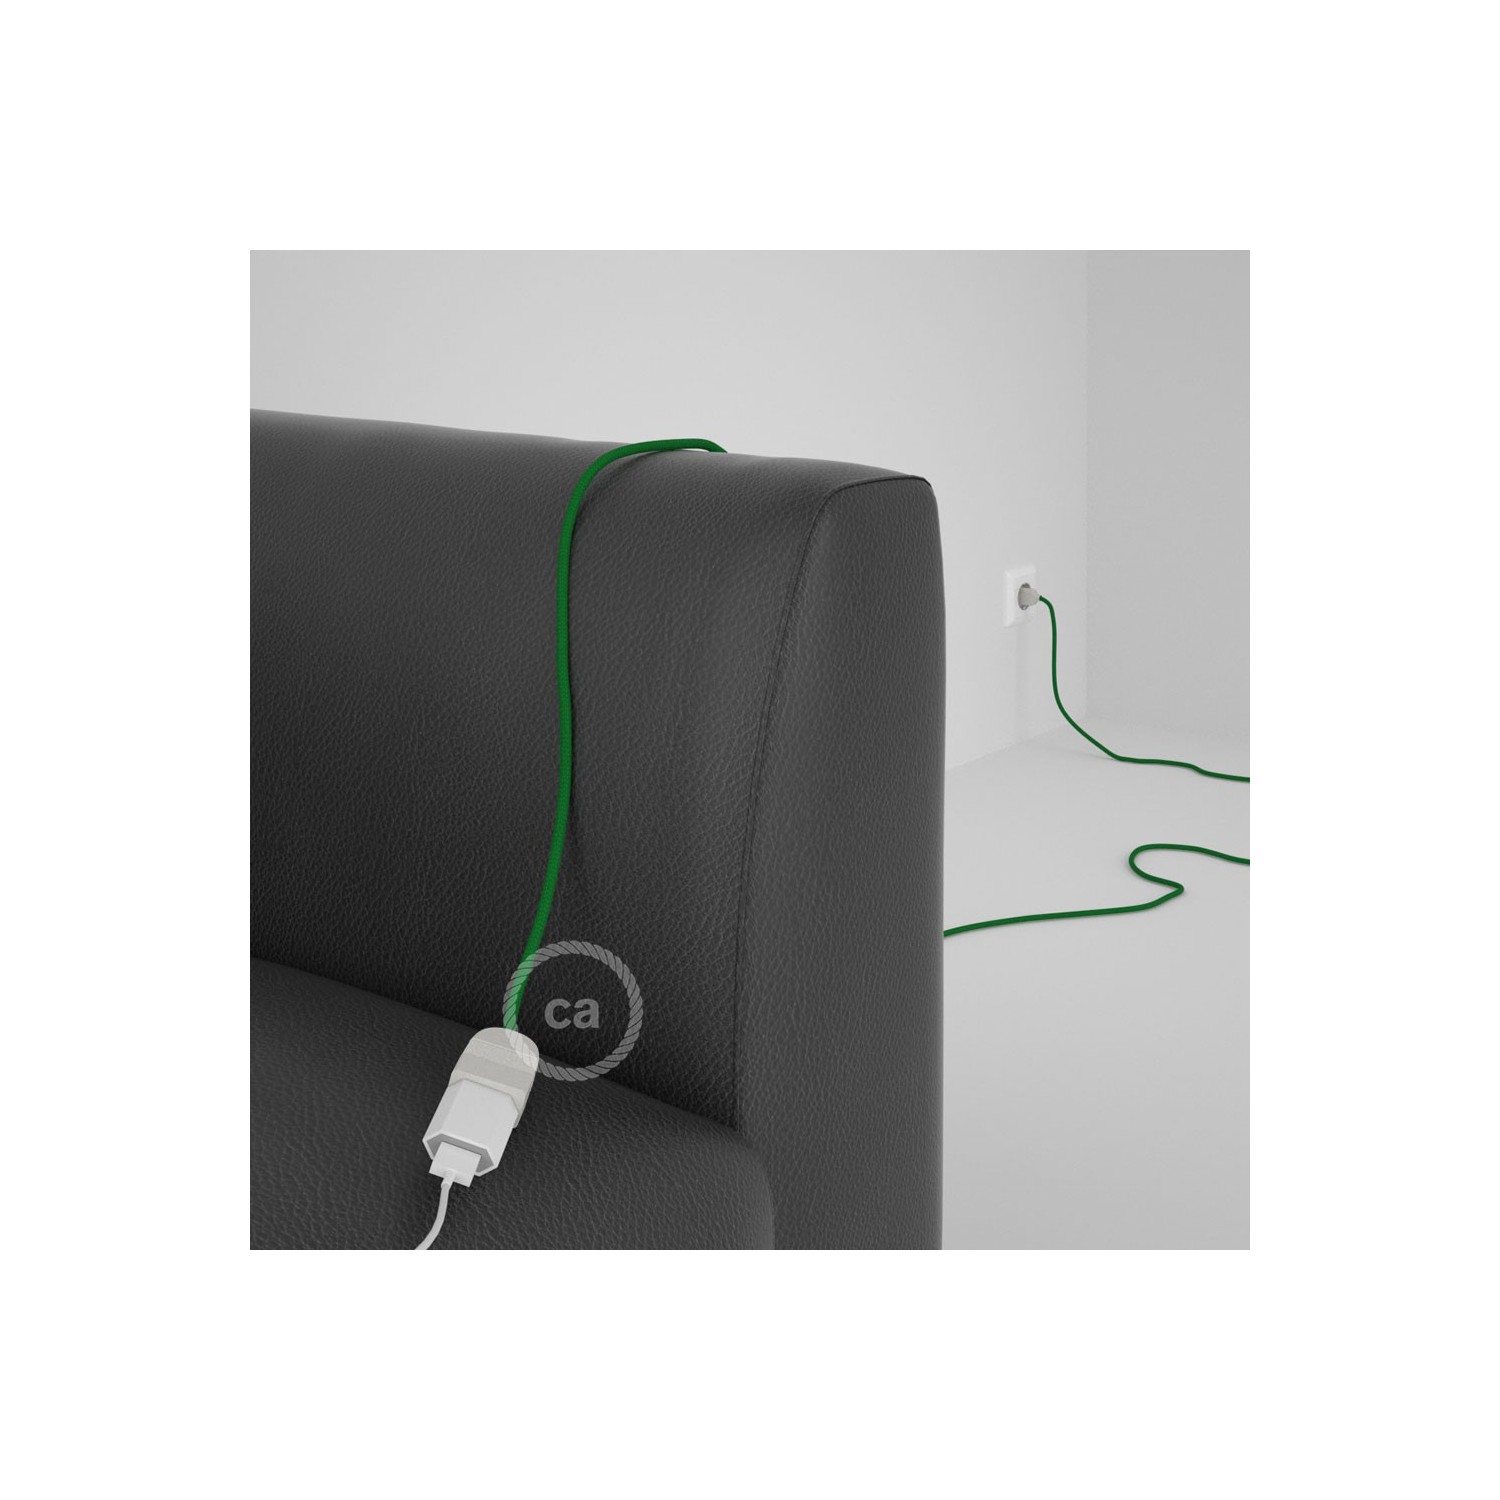 Podaljševalni kabel za napajanje (2P 10A) zelen rejon RM06 - Made in Italy